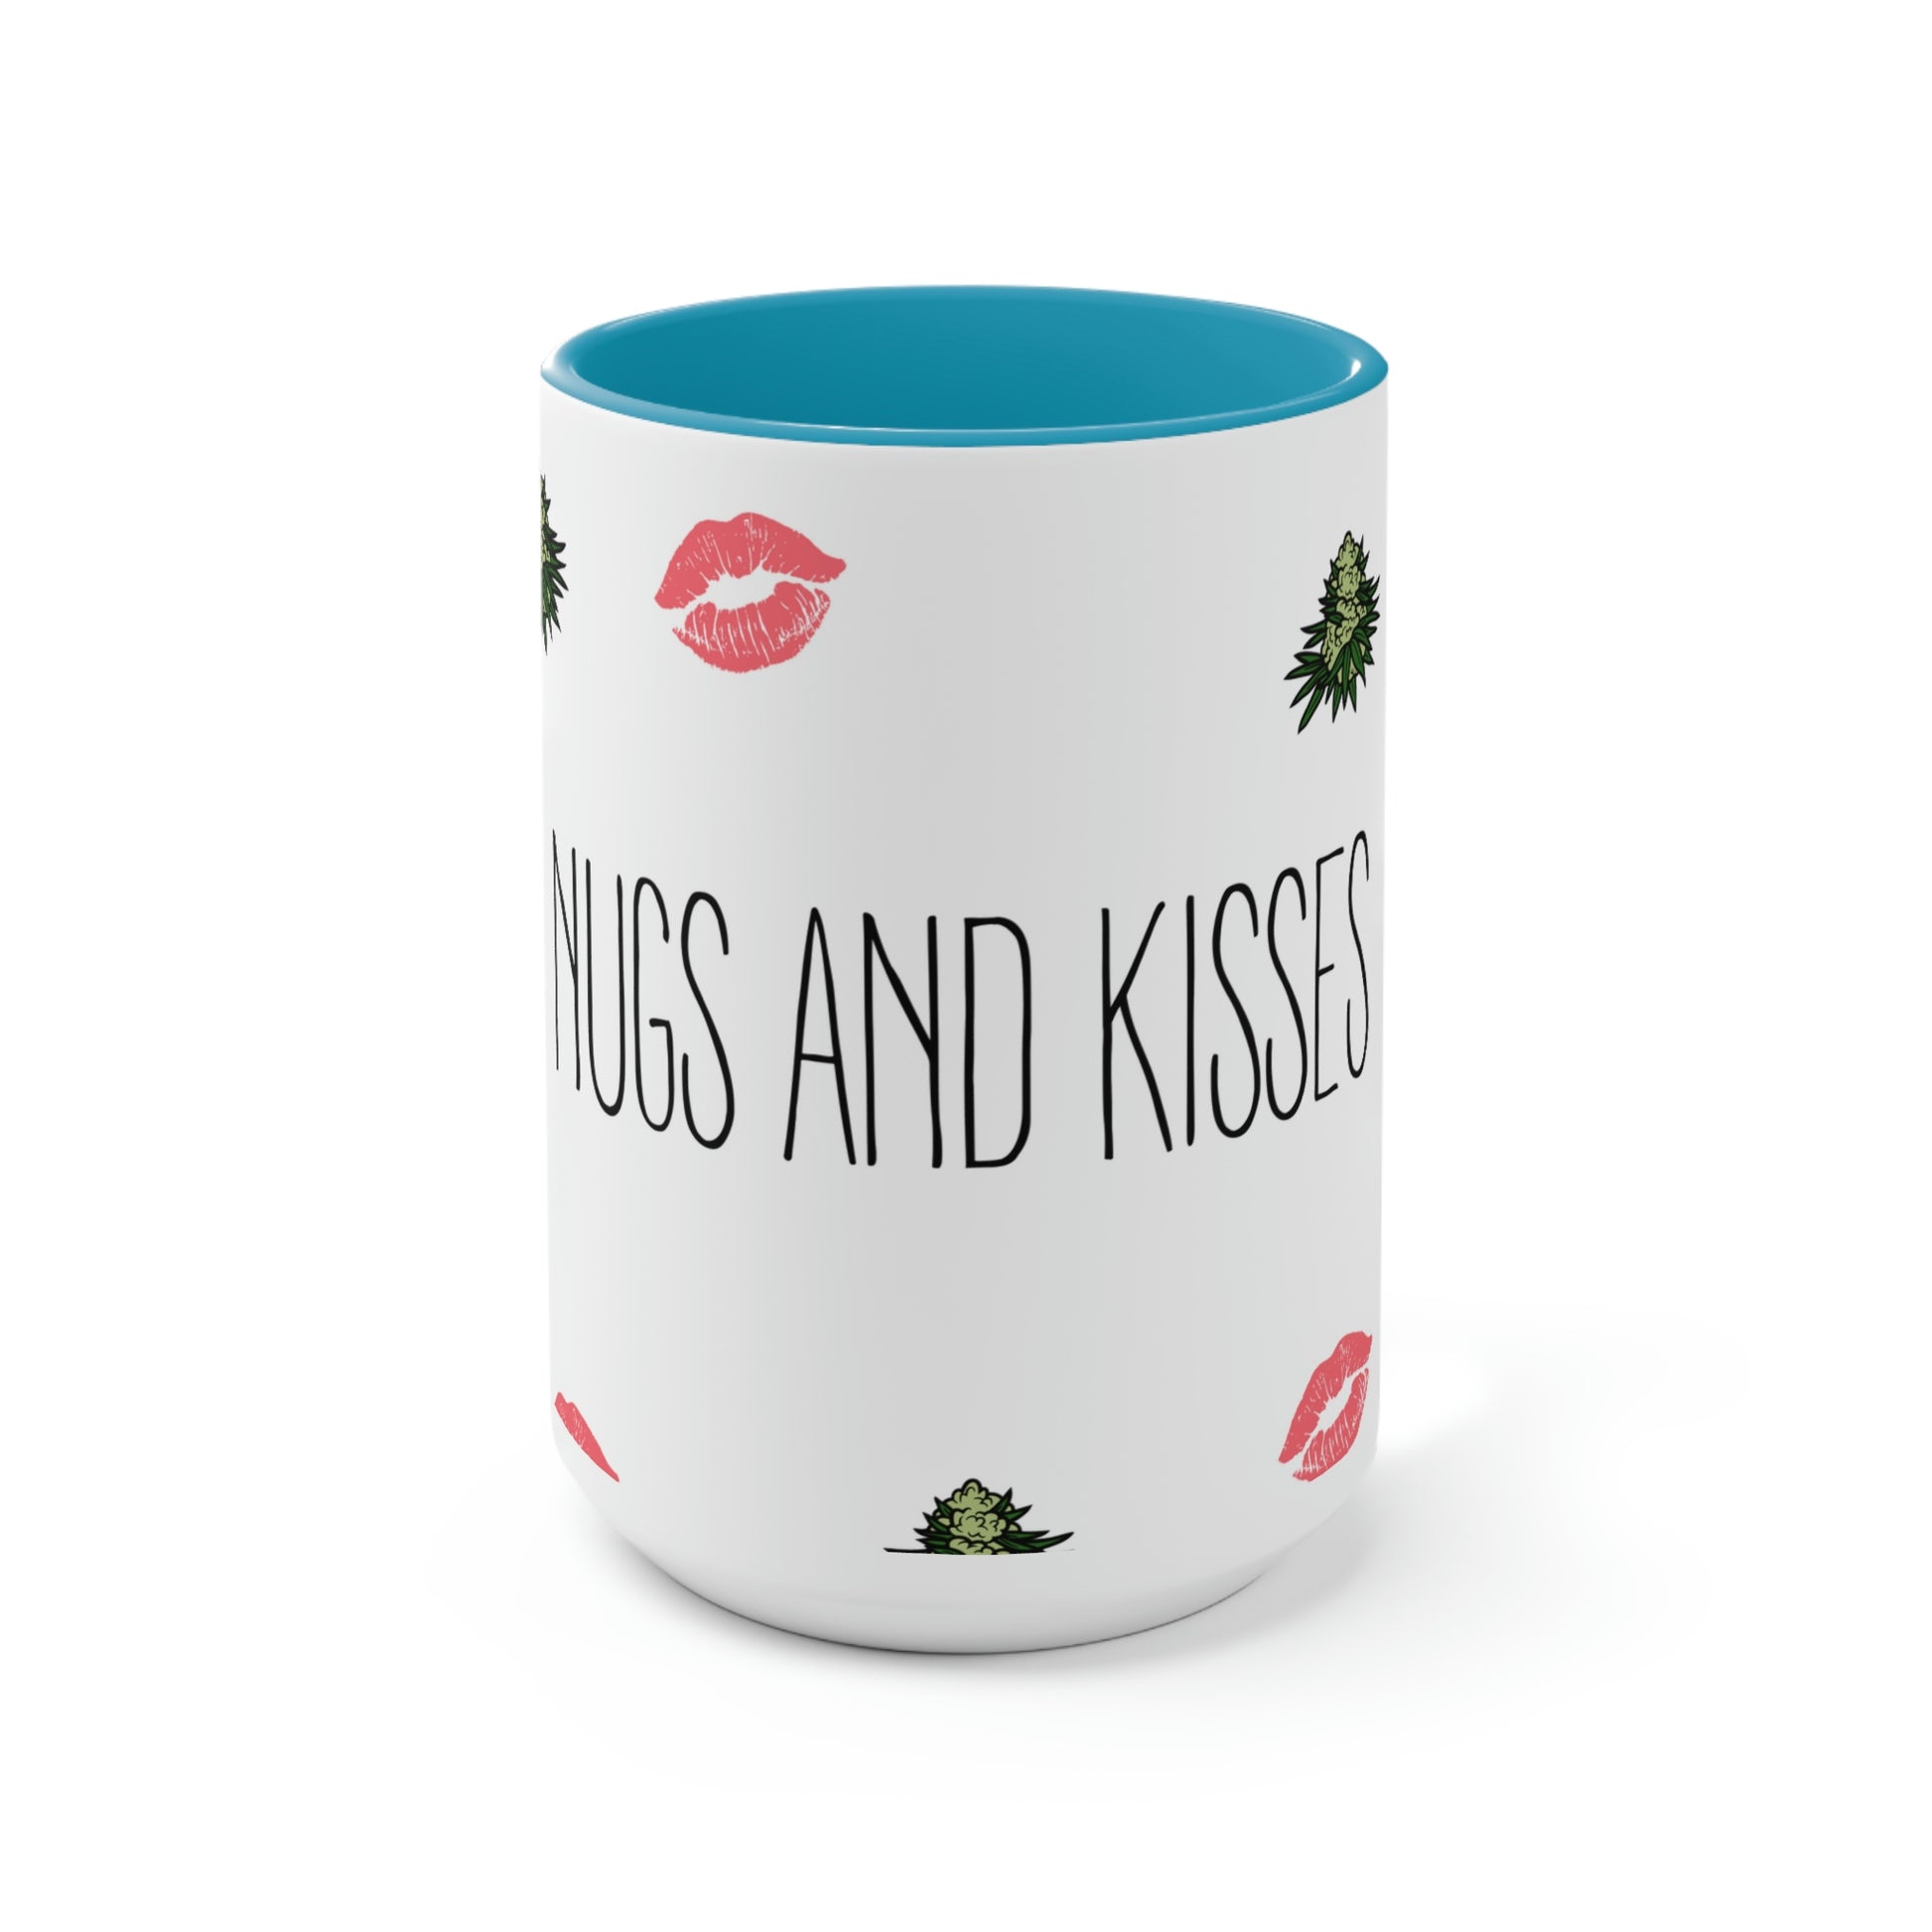 Nugs and Kisses Coffee Mug and kisses coffee mug.